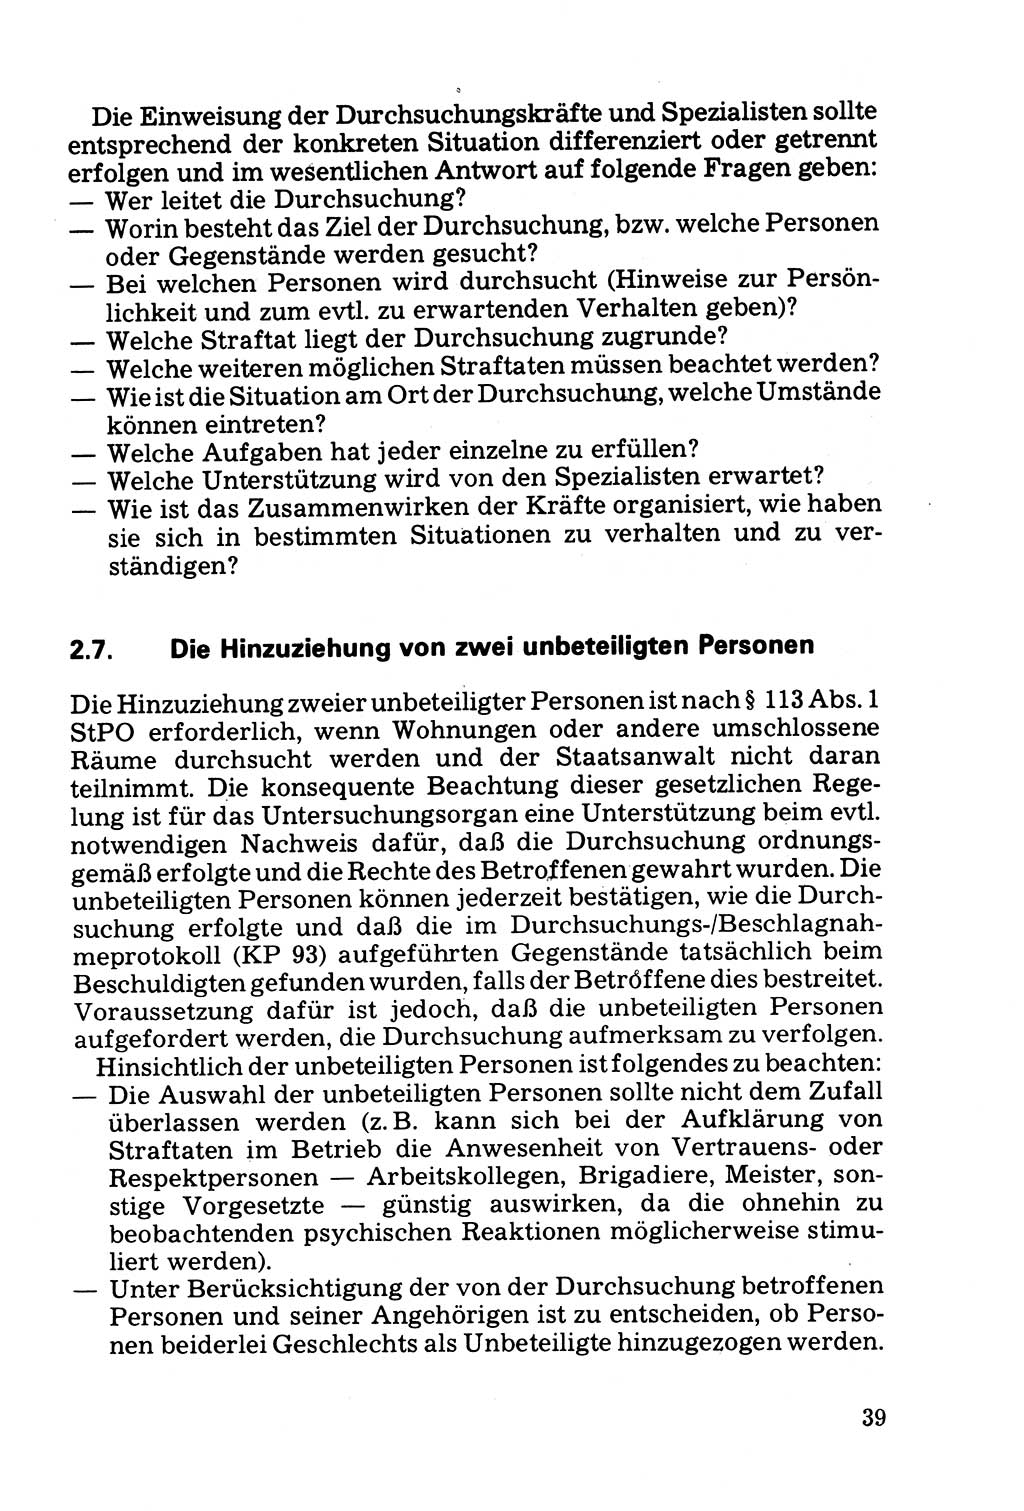 Die Durchsuchung und die Beschlagnahme [Deutsche Demokratische Republik (DDR)] 1979, Seite 39 (Durchs. Beschl. DDR 1979, S. 39)